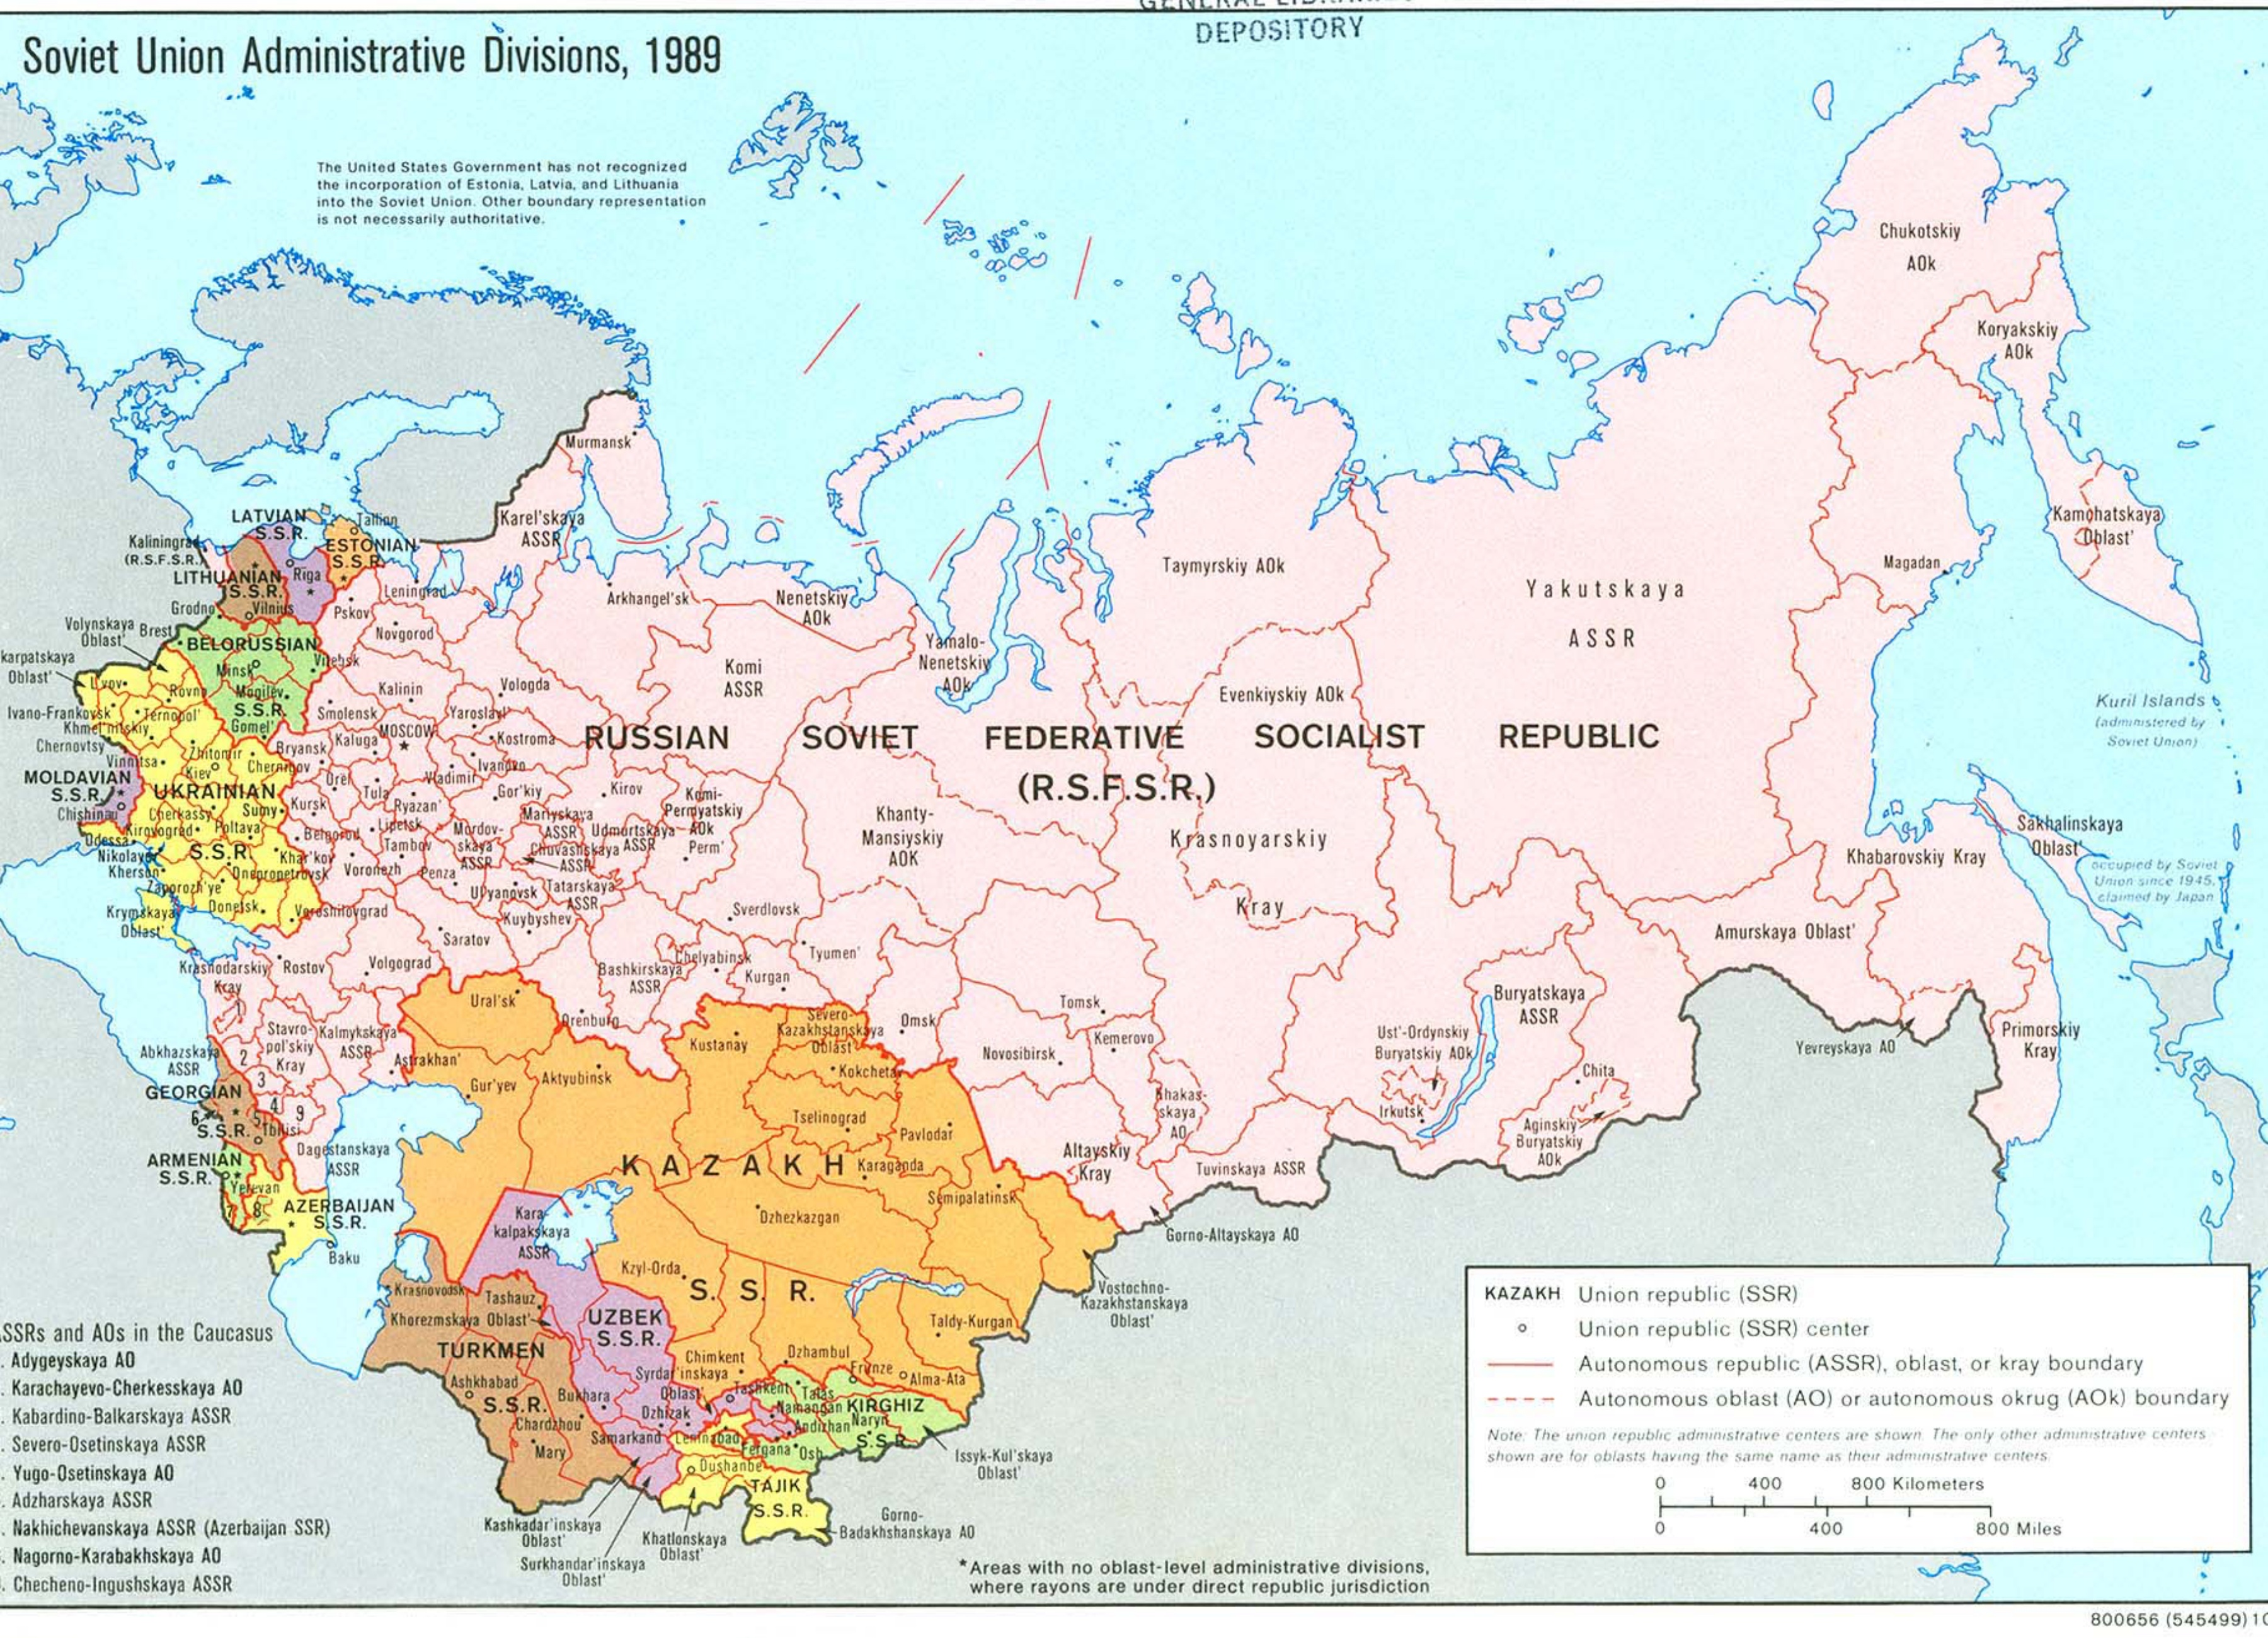 Bản đồ đất nước Nga (Russia Map): Bản đồ đất nước Nga cho thấy sức mạnh và vị trí chiến lược của đất nước lớn nhất thế giới này. Nó cũng thể hiện sự đa dạng về cảnh quan và văn hóa, tạo nên một điểm đến hấp dẫn cho du khách muốn khám phá và trải nghiệm.